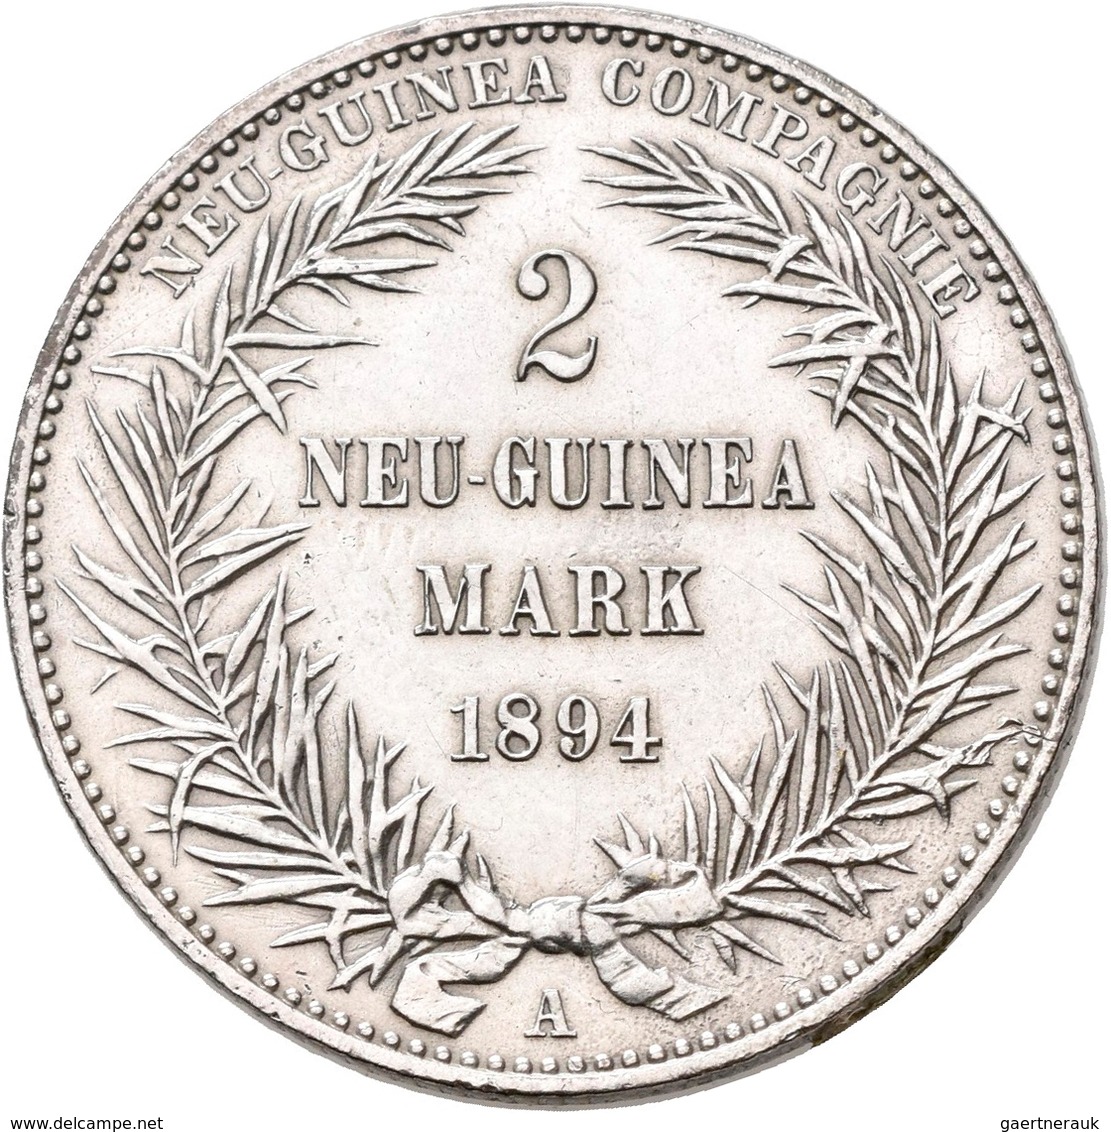 Deutsch-Neuguinea: 2 Neu-Guinea Mark 1894 A, Paradiesvogel, Jaeger 706, Kratzer, Sehr Schön-vorzügli - Duits Nieuw-Guinea